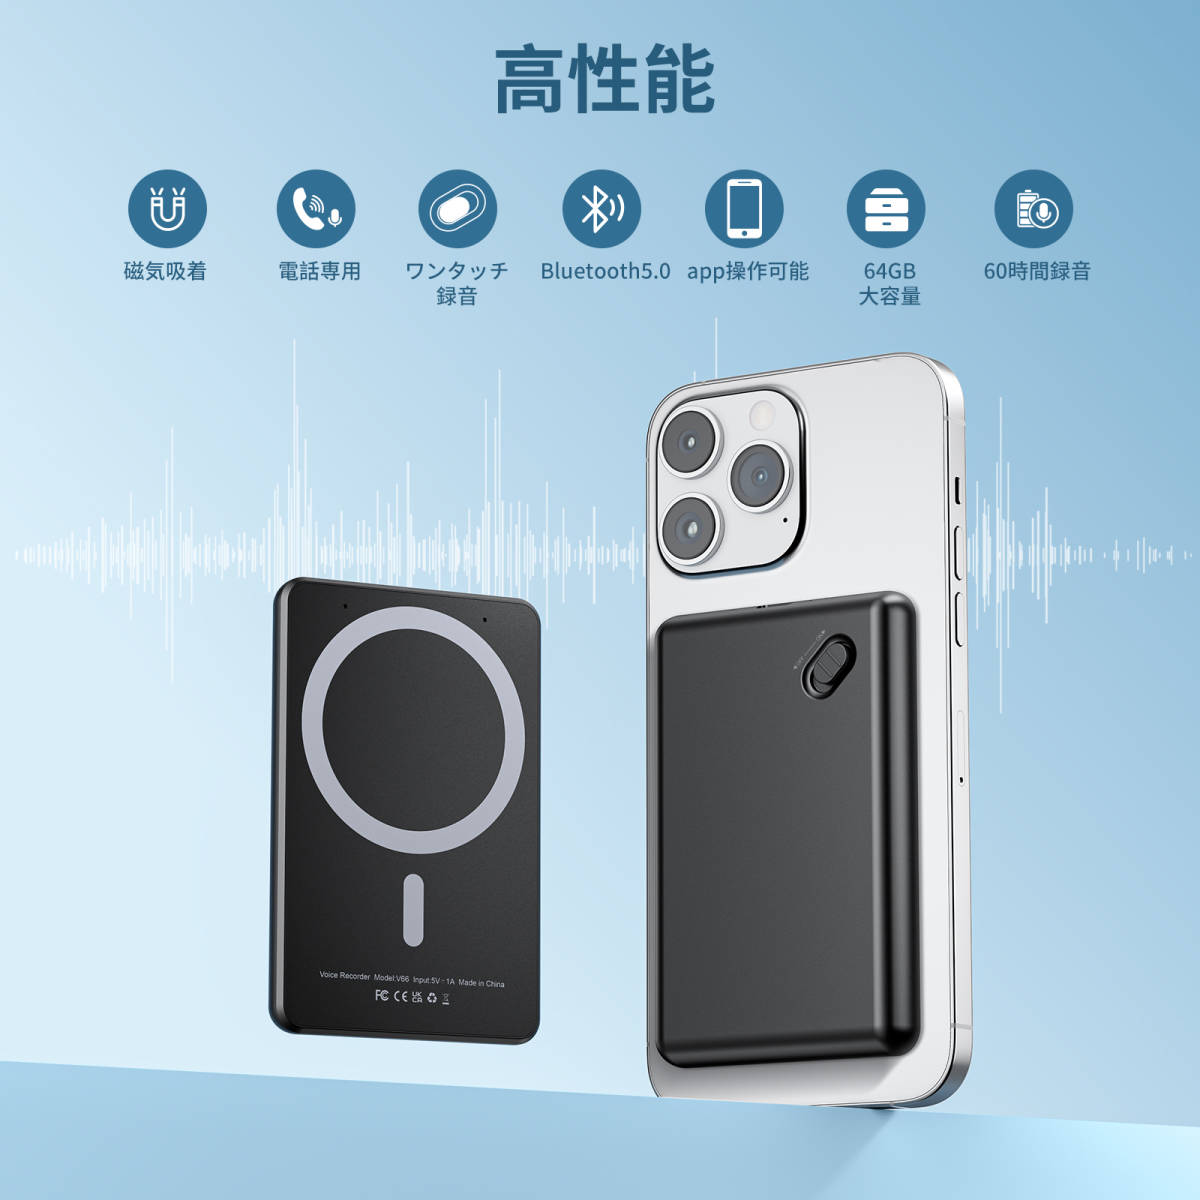 磁気吸着 ボイスレコーダー 64GB内蔵 60時間連続使用可能 録音 ワンボタン録音 レコーダー 電話録音 icレコーダー android app対応の画像1